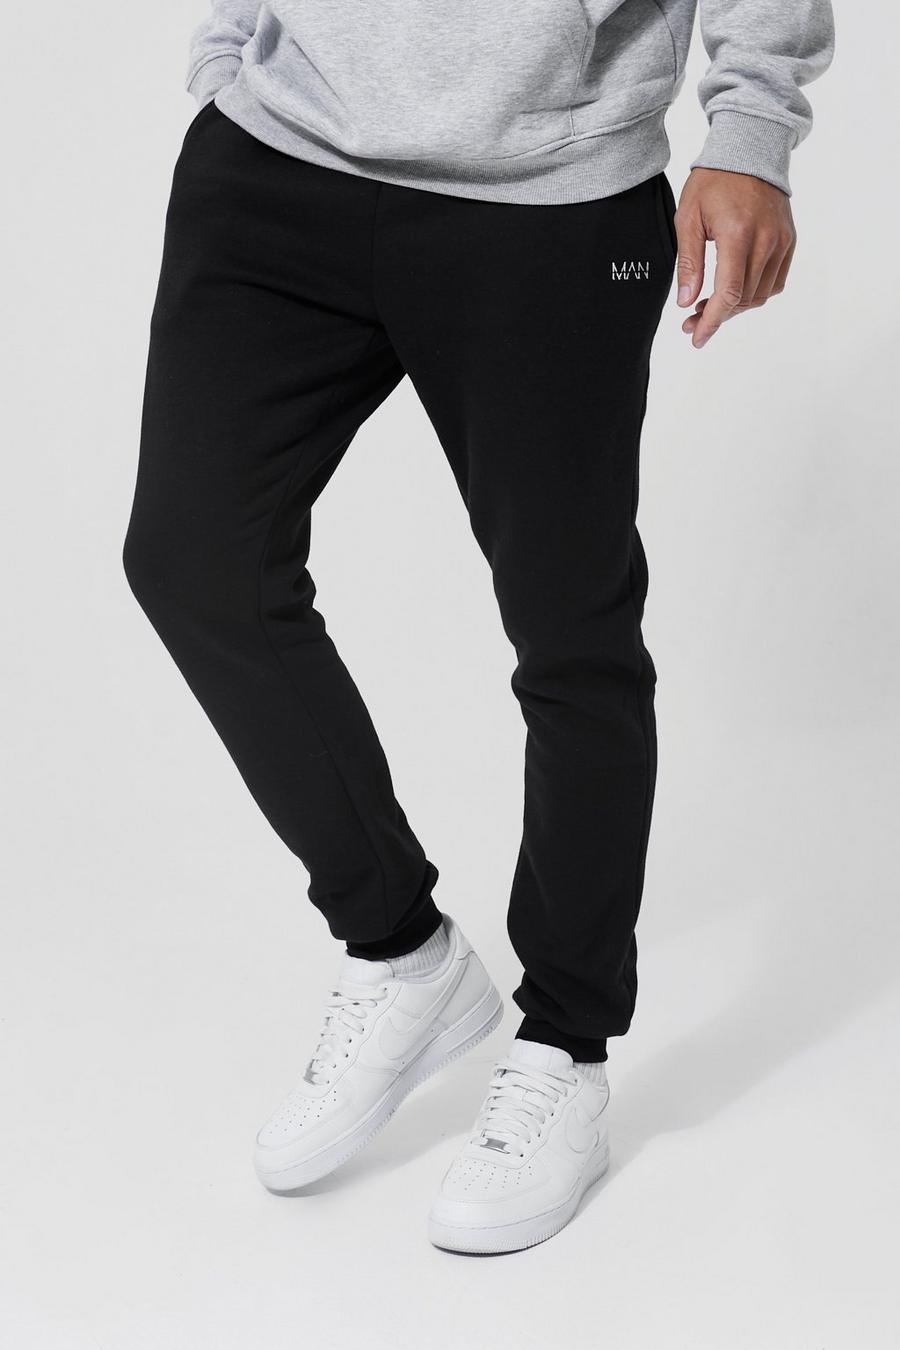 Pantalón deportivo Tall básico pitillo con letras MAN, Black nero